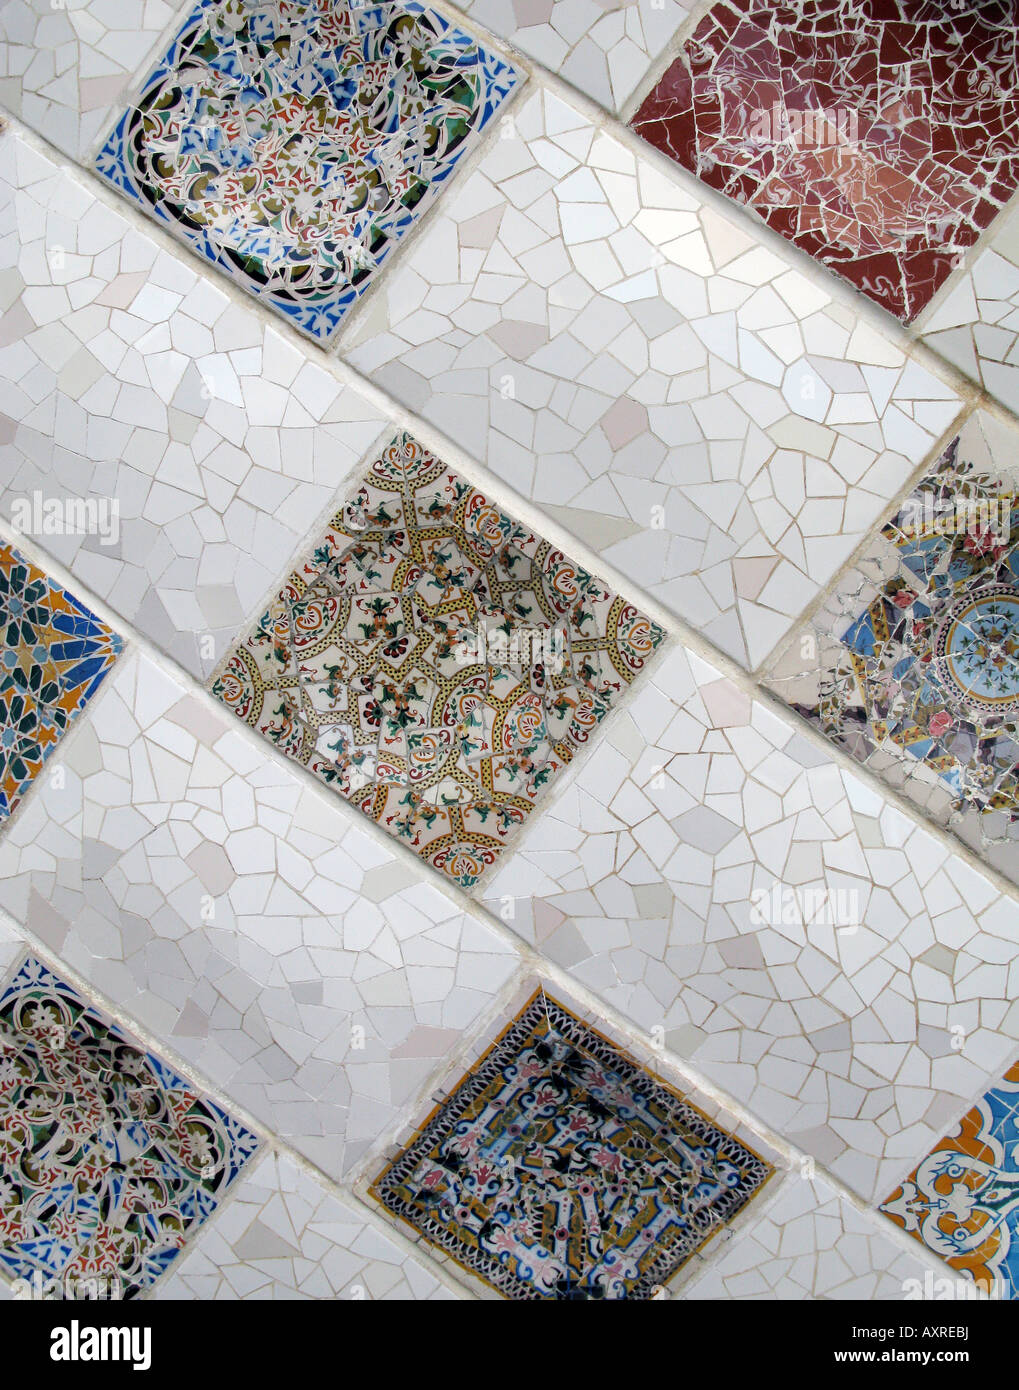 Cerca de mosaicos de Gaudí en el Parque Güell de Barcelona Foto de stock